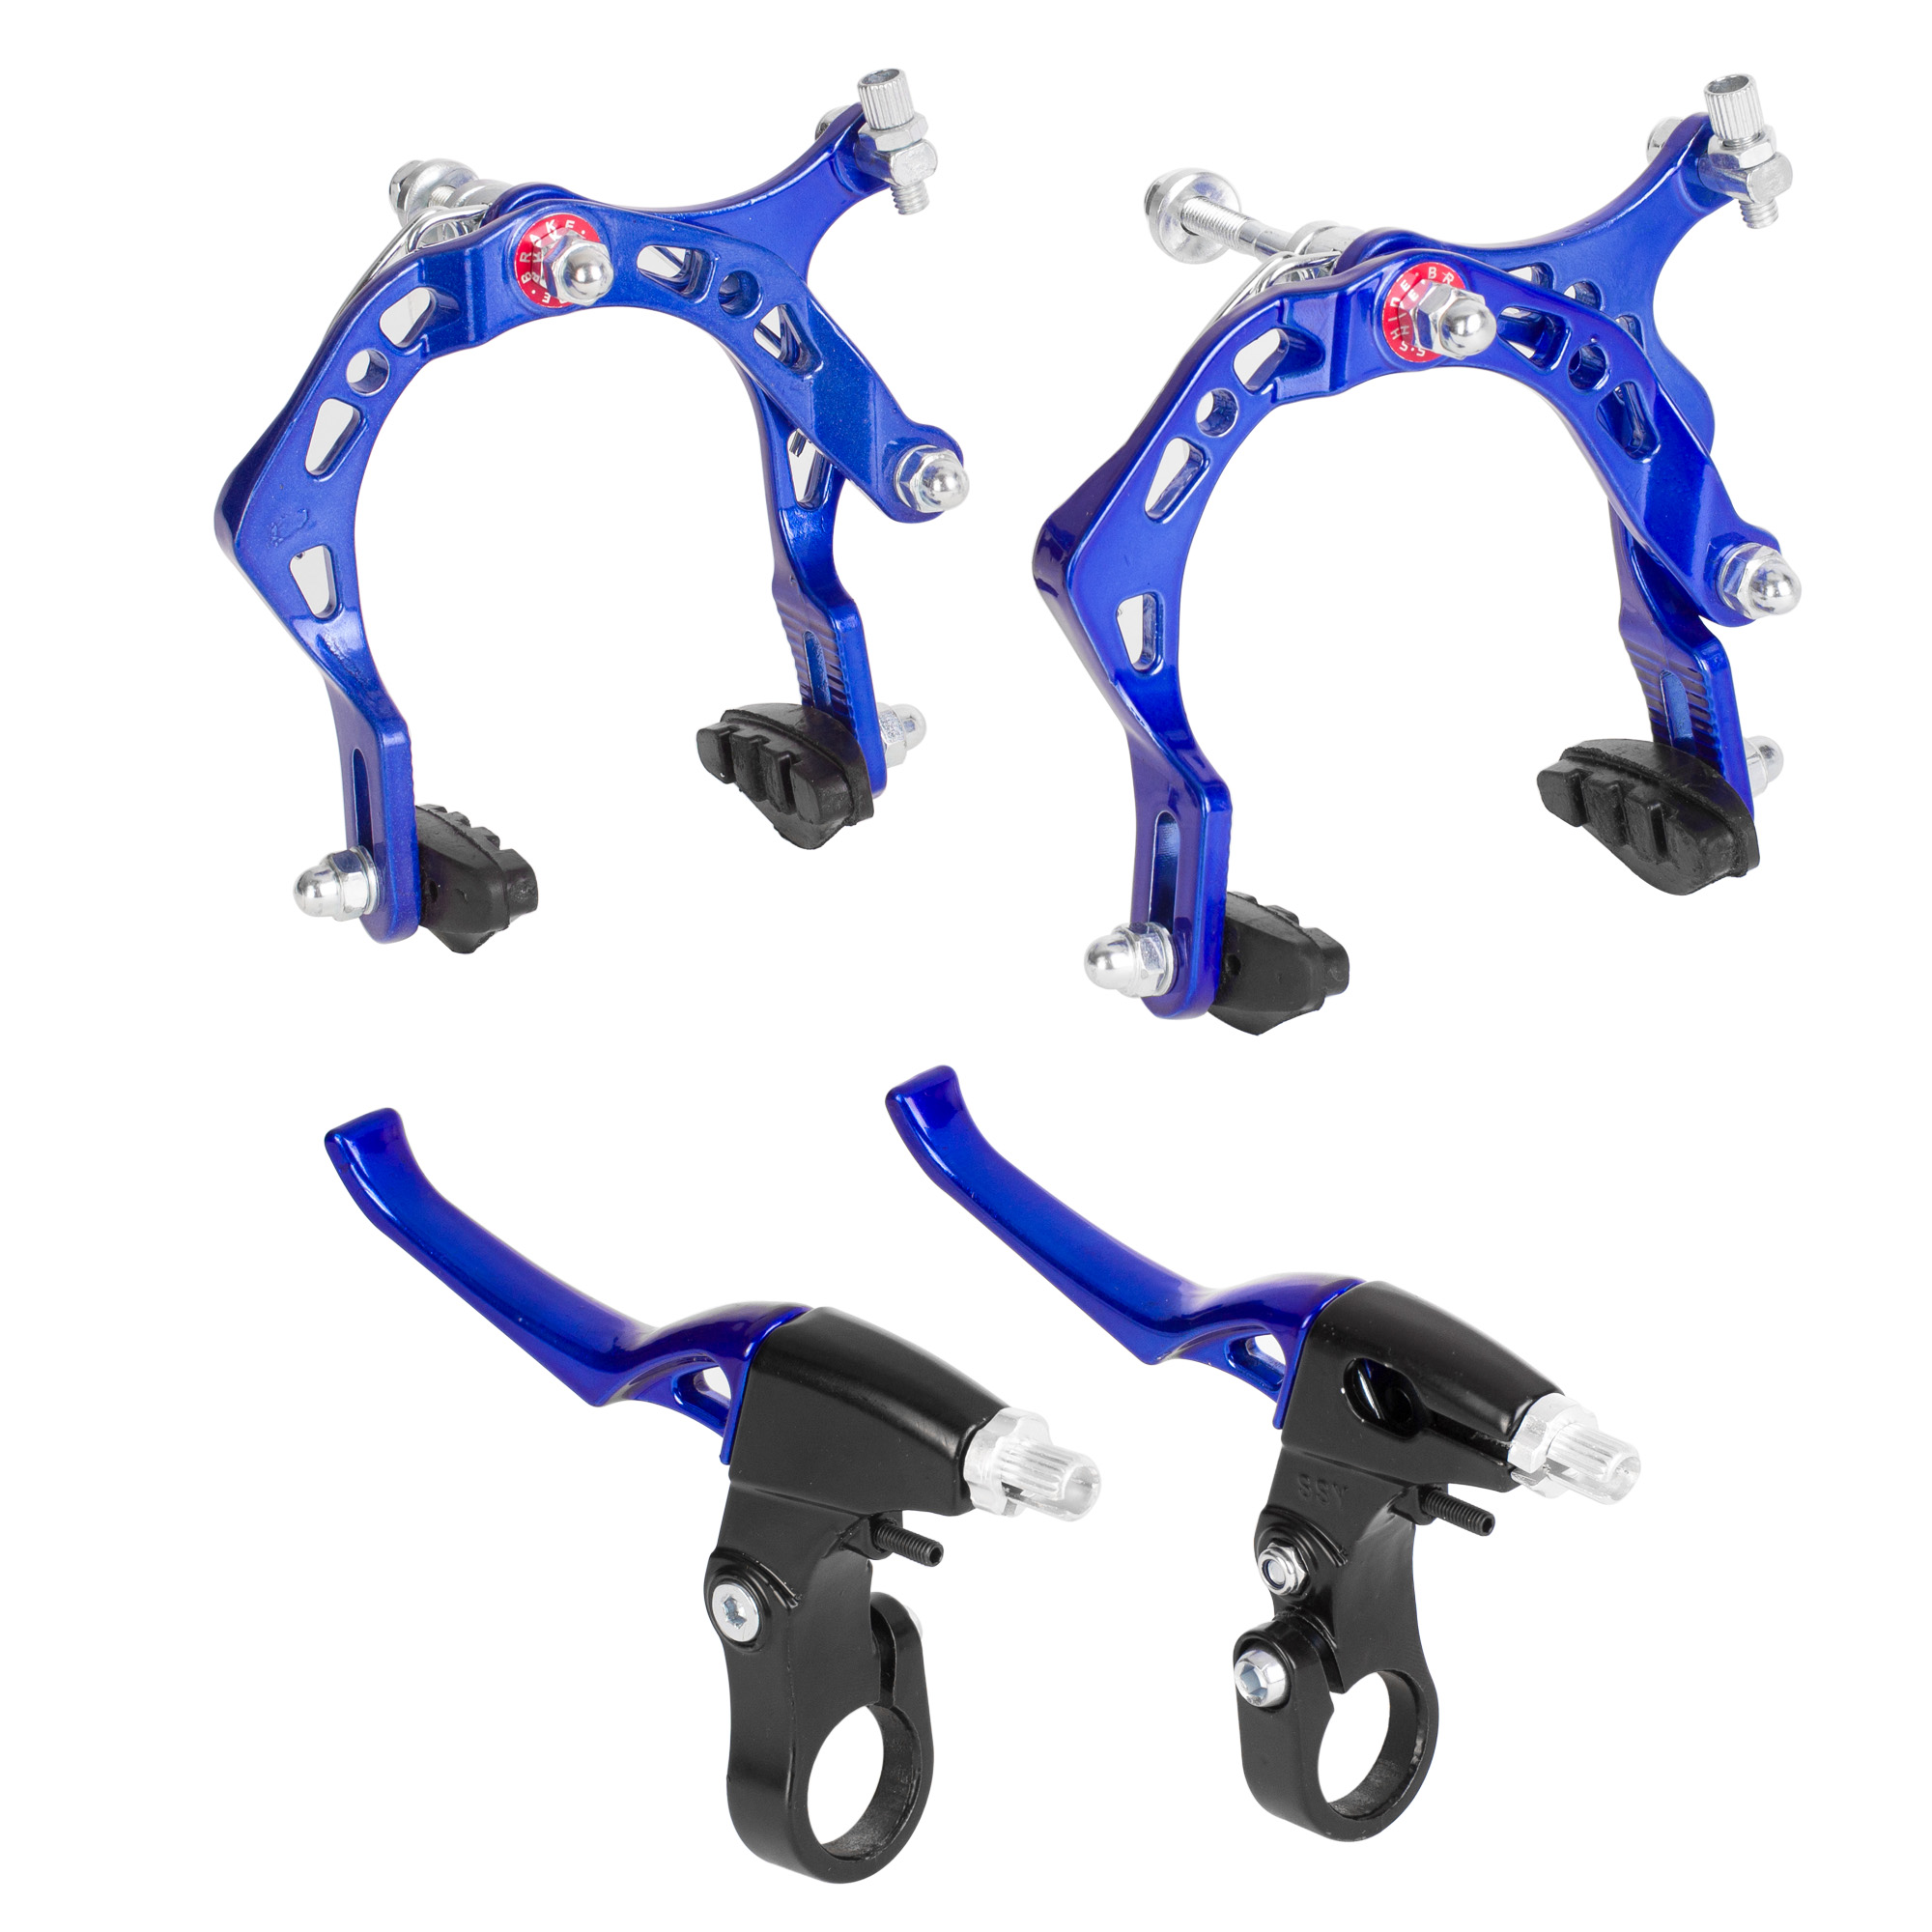 Ciclometa Detalles Freno caliper para bicicleta BMX aluminio azul